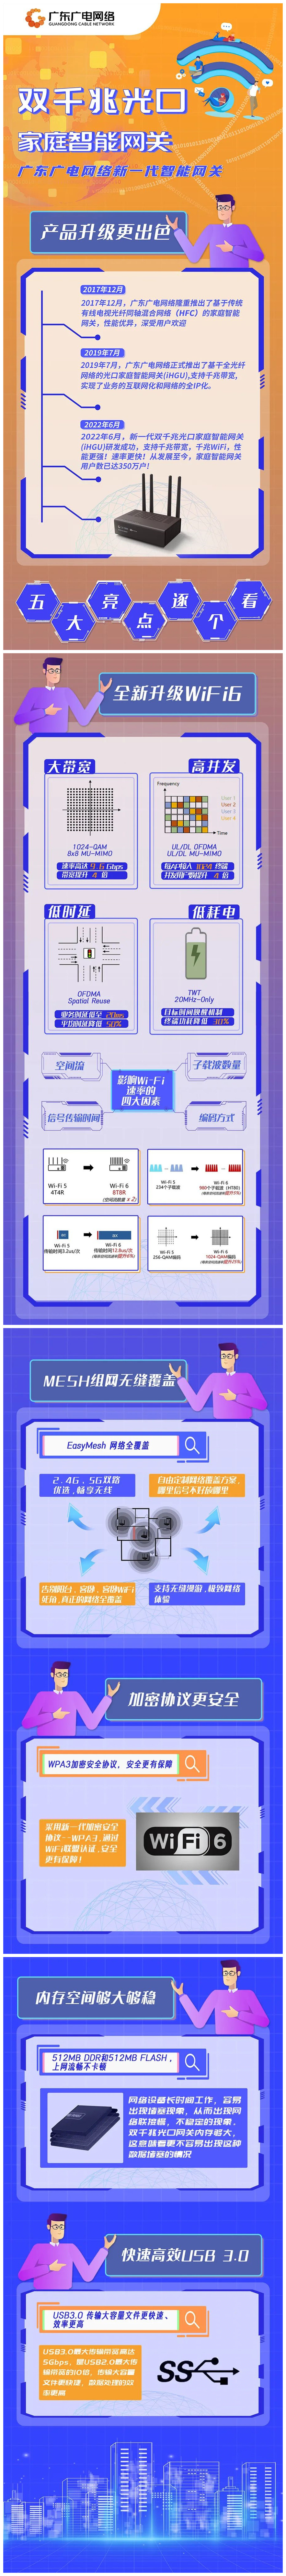 广东广电网络新一代家庭智能网关，支持千兆带宽和千兆WiFi